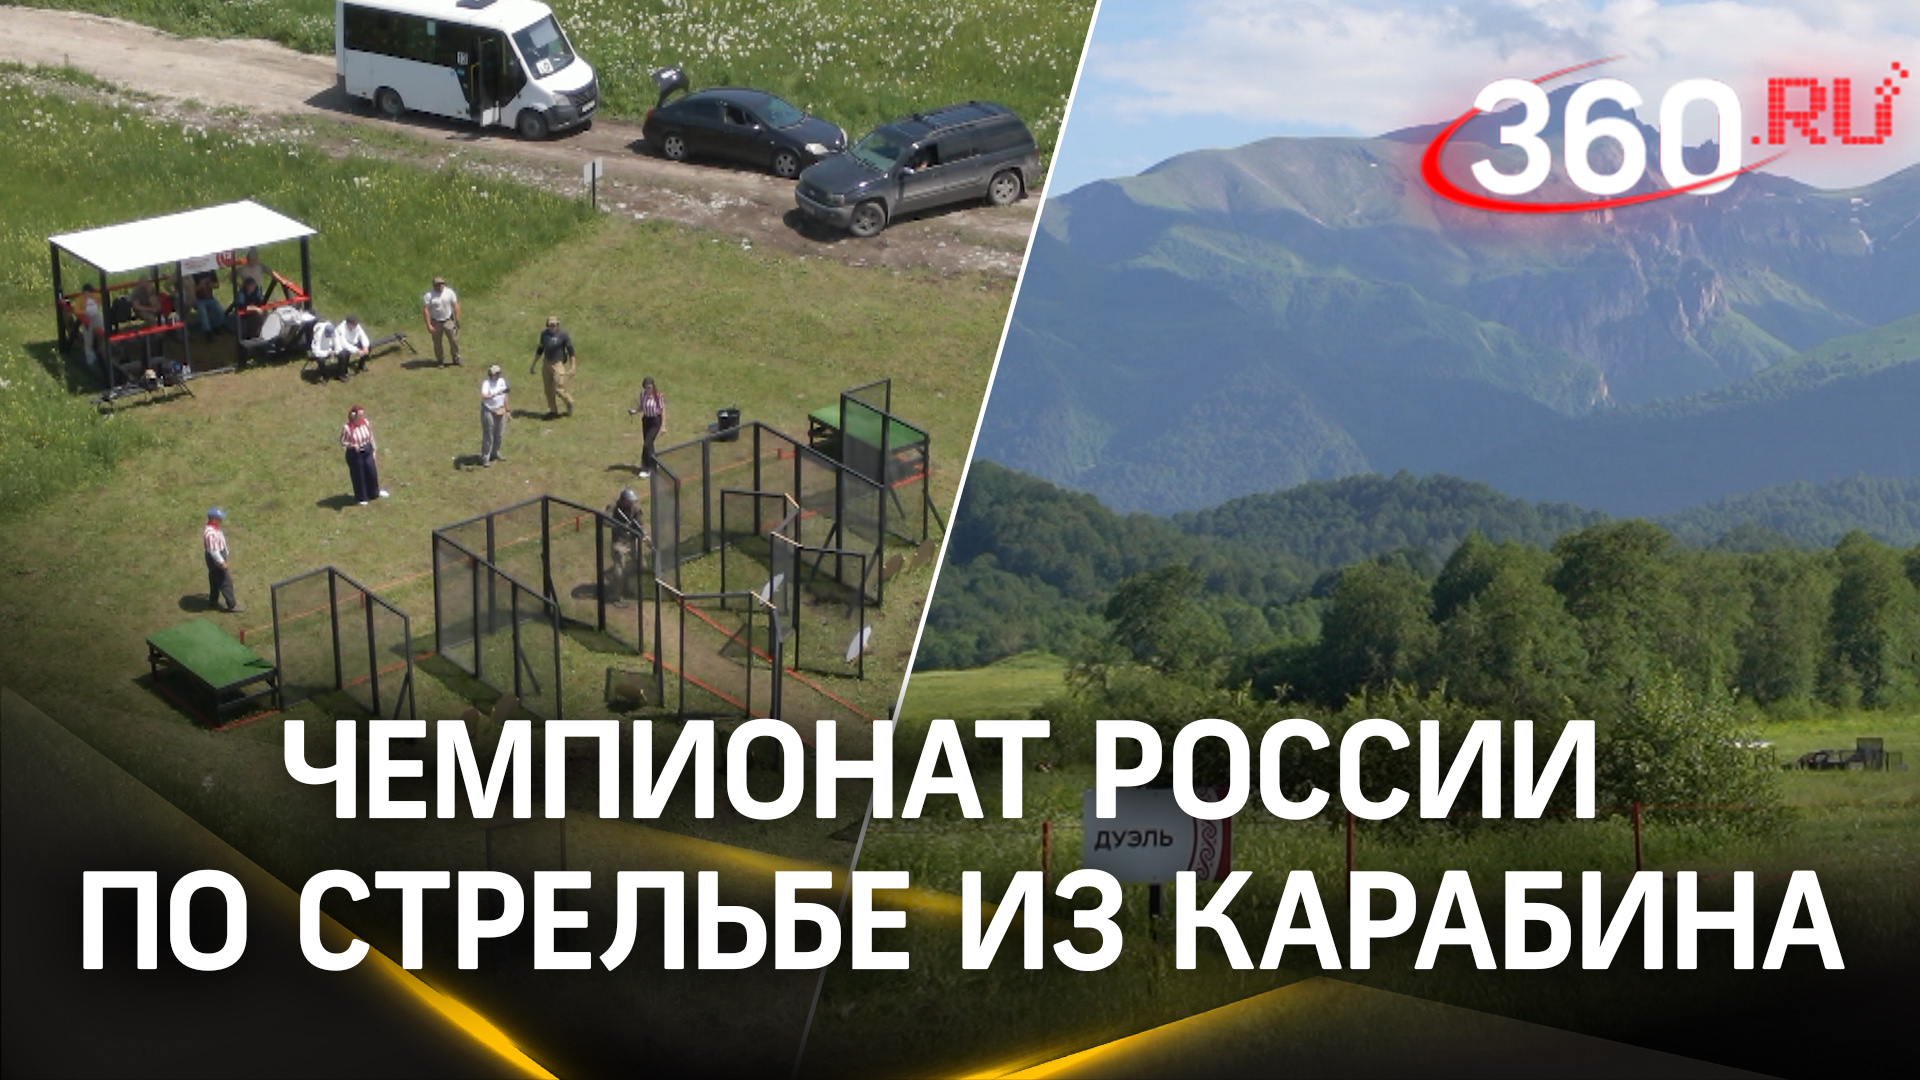 Впервые в истории: чемпионат России по практической стрельбе из карабина стартовал в Осетии